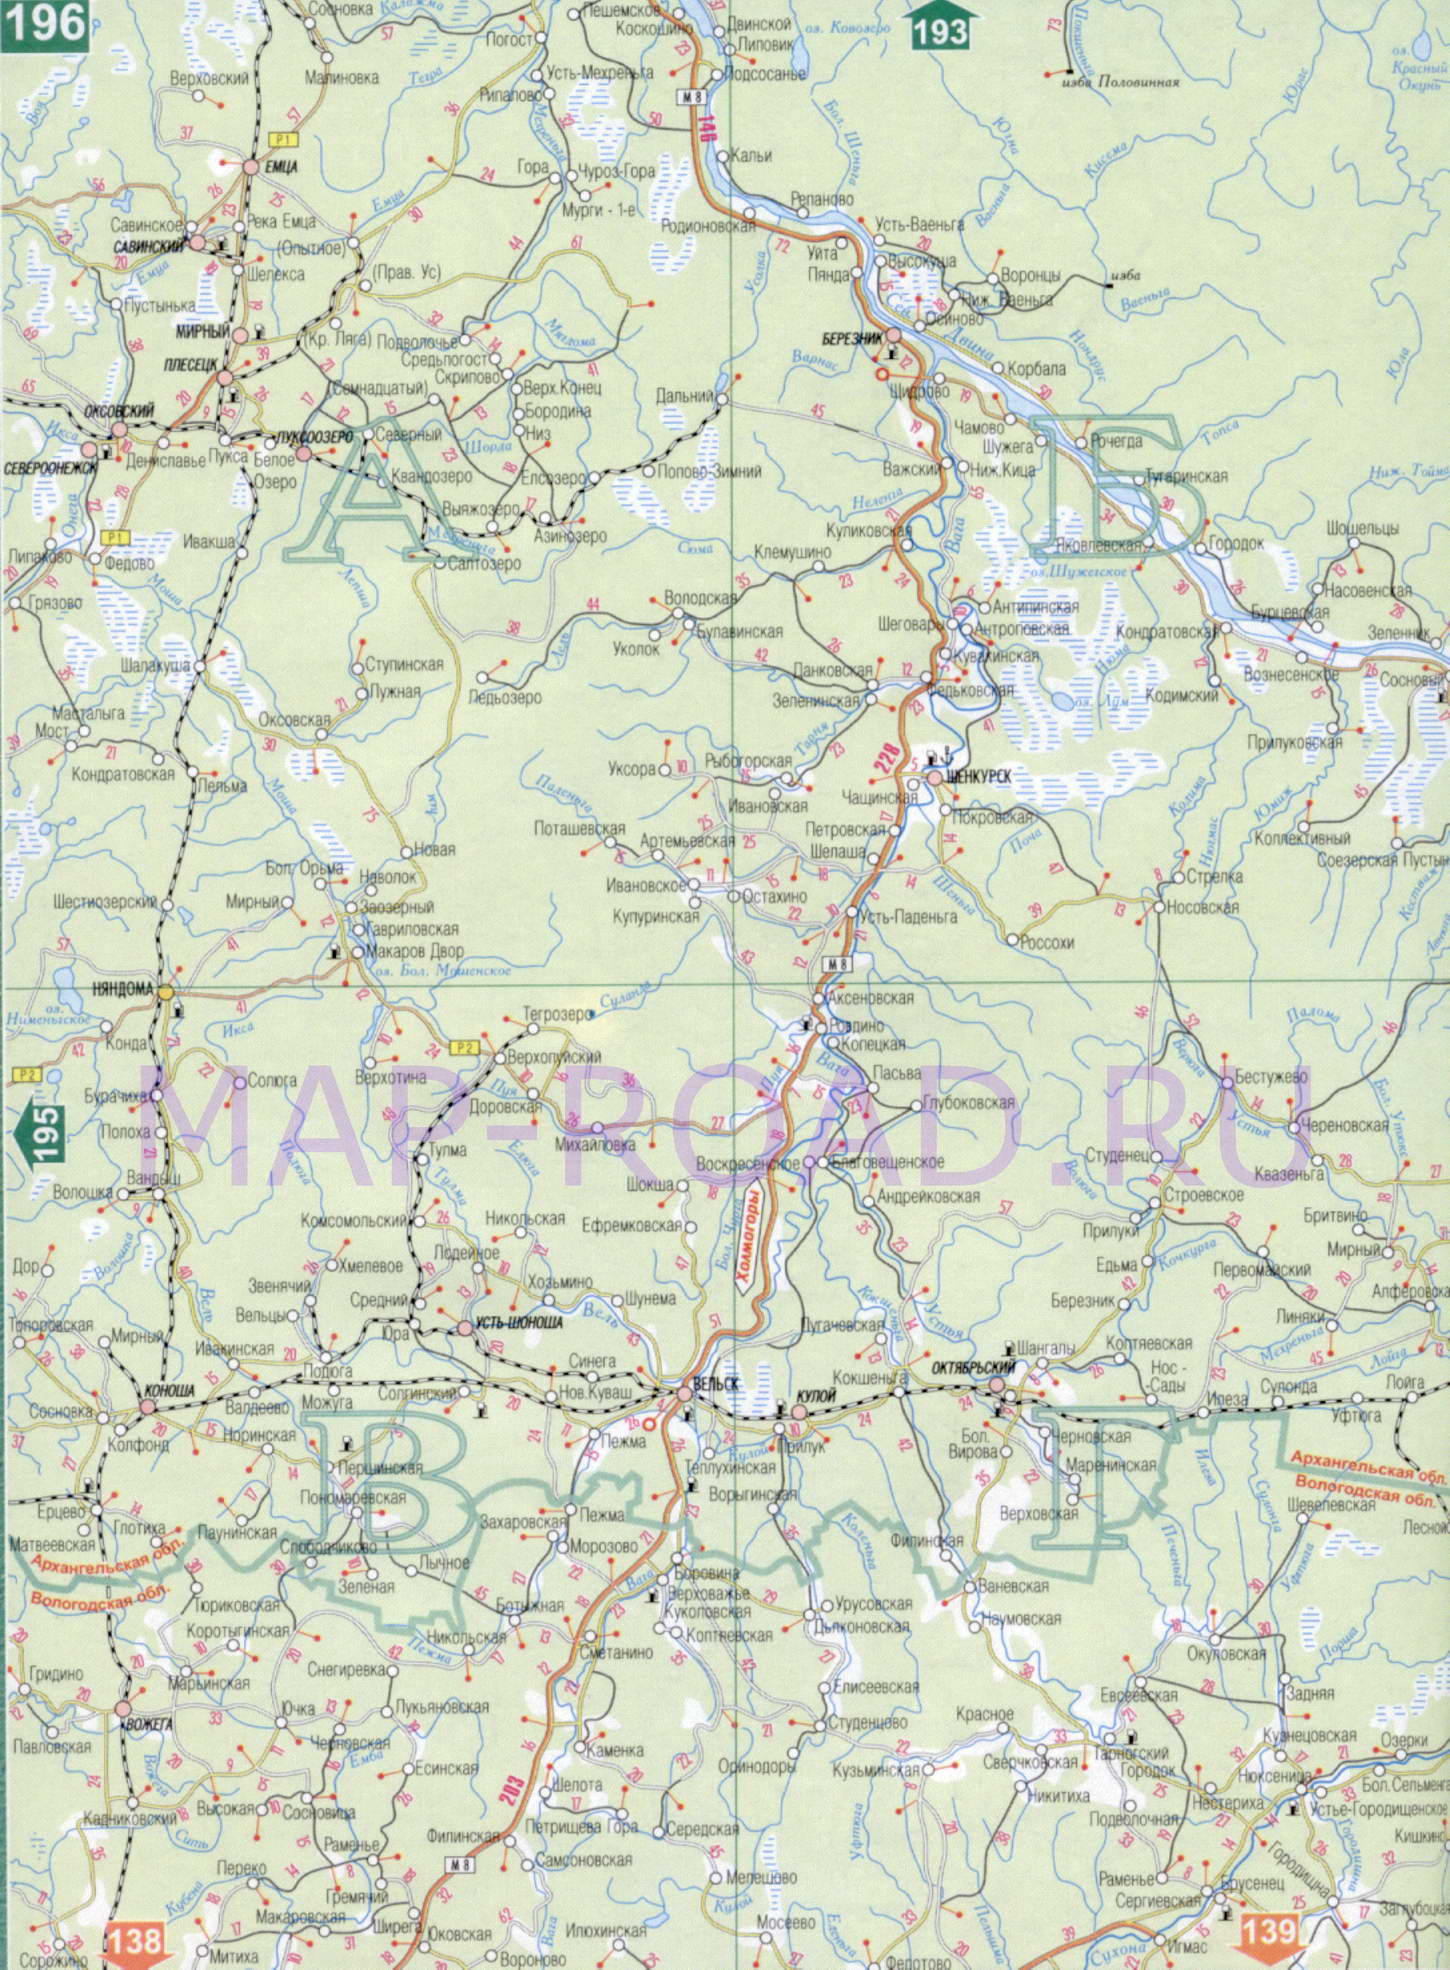 Карта Архангельской области 1см:15км. Карта автомобильных и железных дорог - Архангельская область, A1 - 